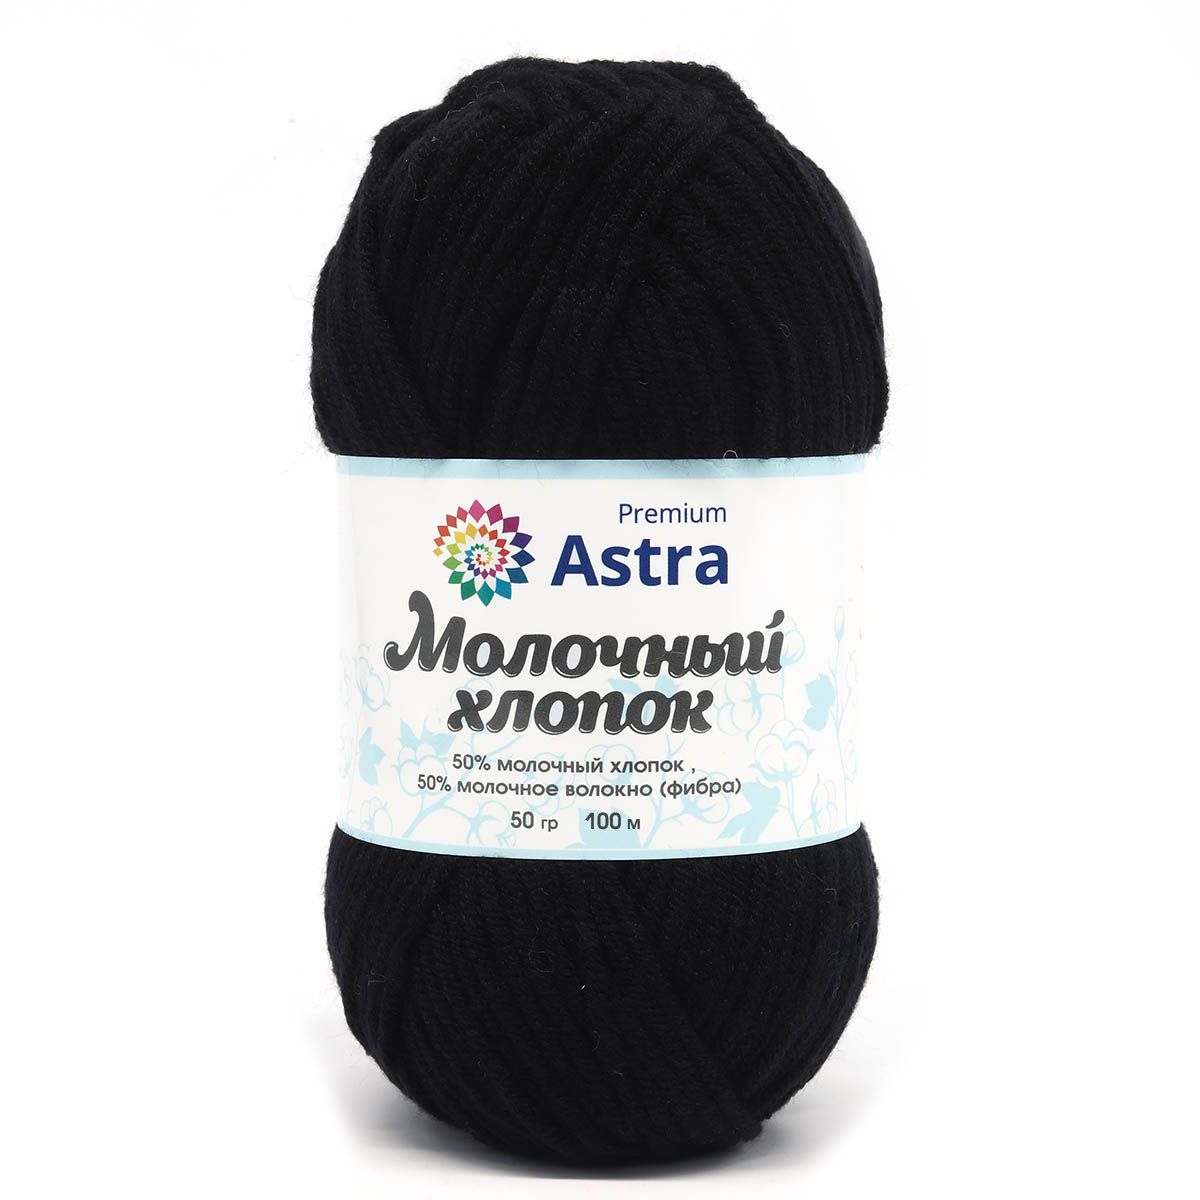 Пряжа для вязания Astra Premium milk cotton хлопок акрил 50 гр 100 м 18 черный 3 мотка - фото 9